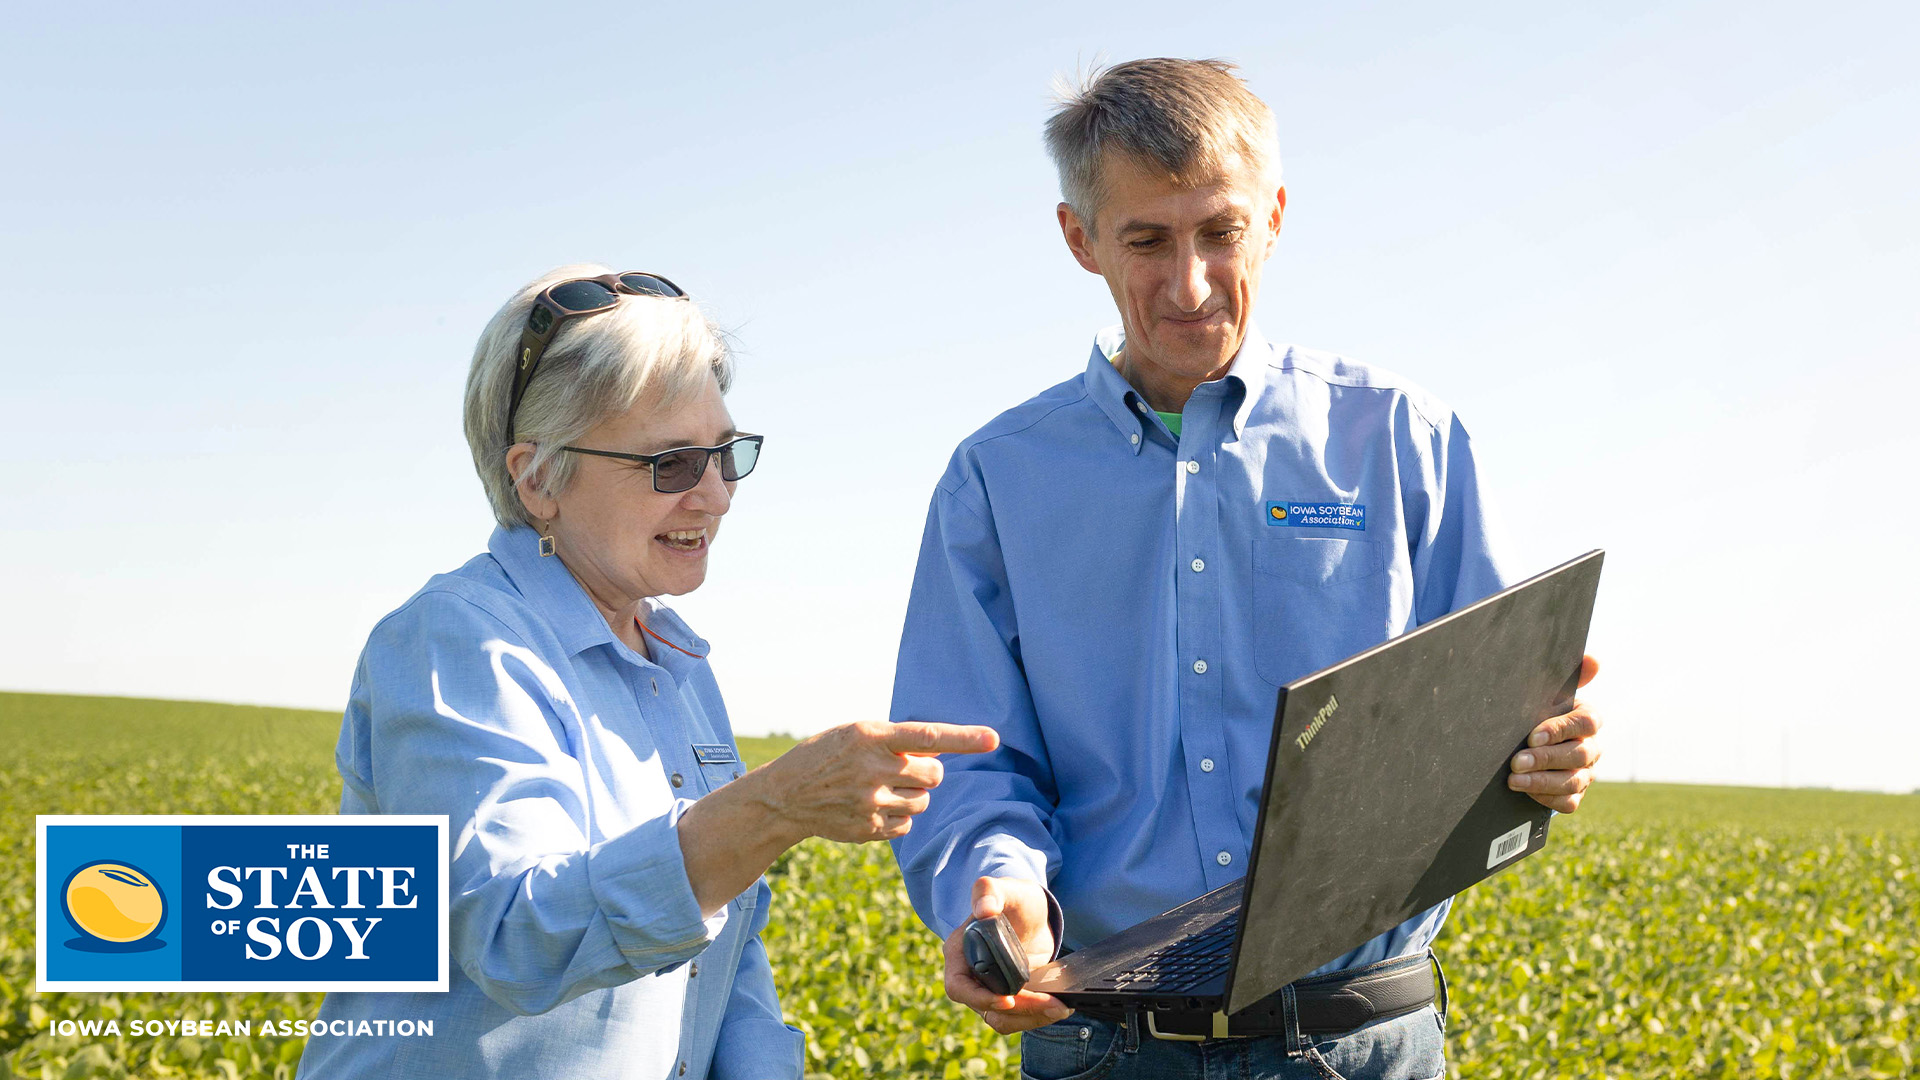 Iowa Soybean Association researchers standing in field 